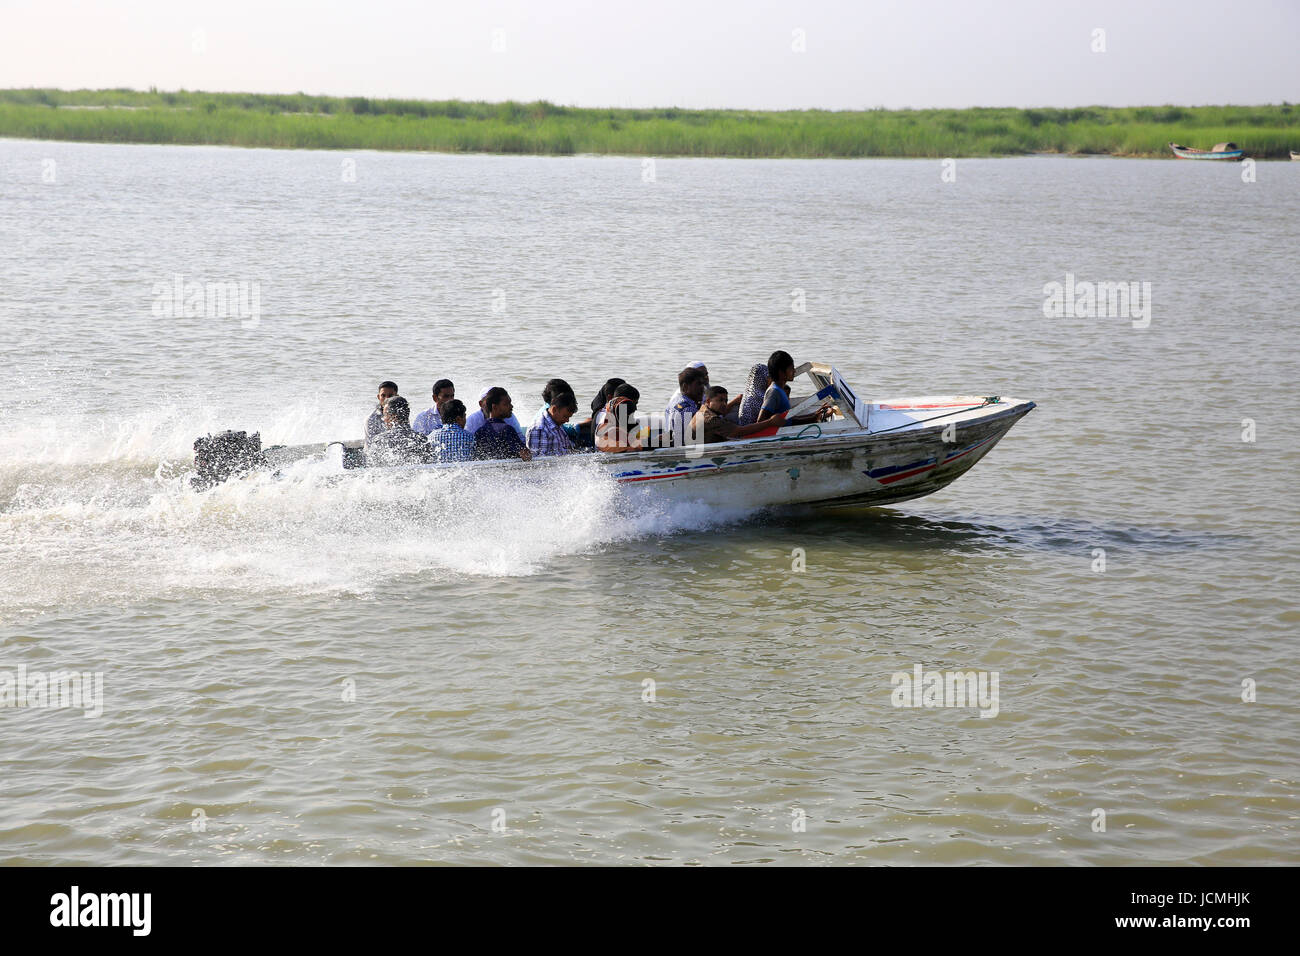 People cross the Padma River on speedboats on the Maowa-Kaorhakandi route without putting life jackets. Munshiganj, Bangladesh Stock Photo